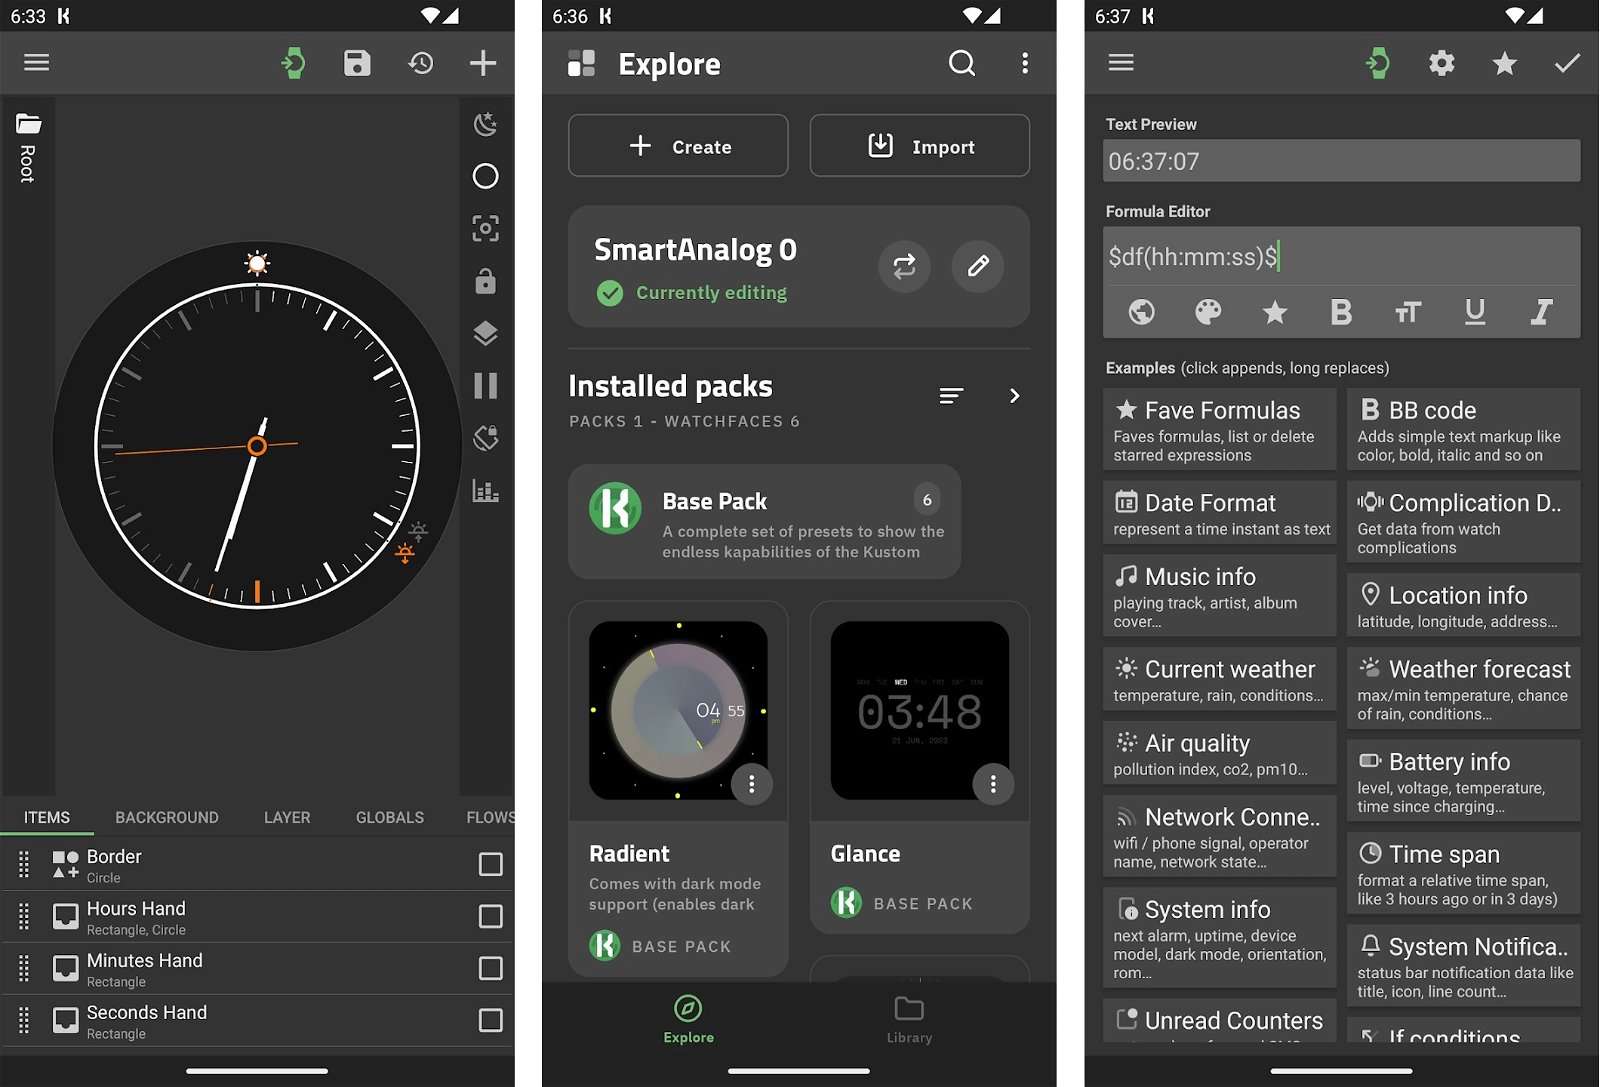 Si tienes un reloj con Wear OS, esta nueva app de personalización de los creadores de KWGT es lo que necesitas